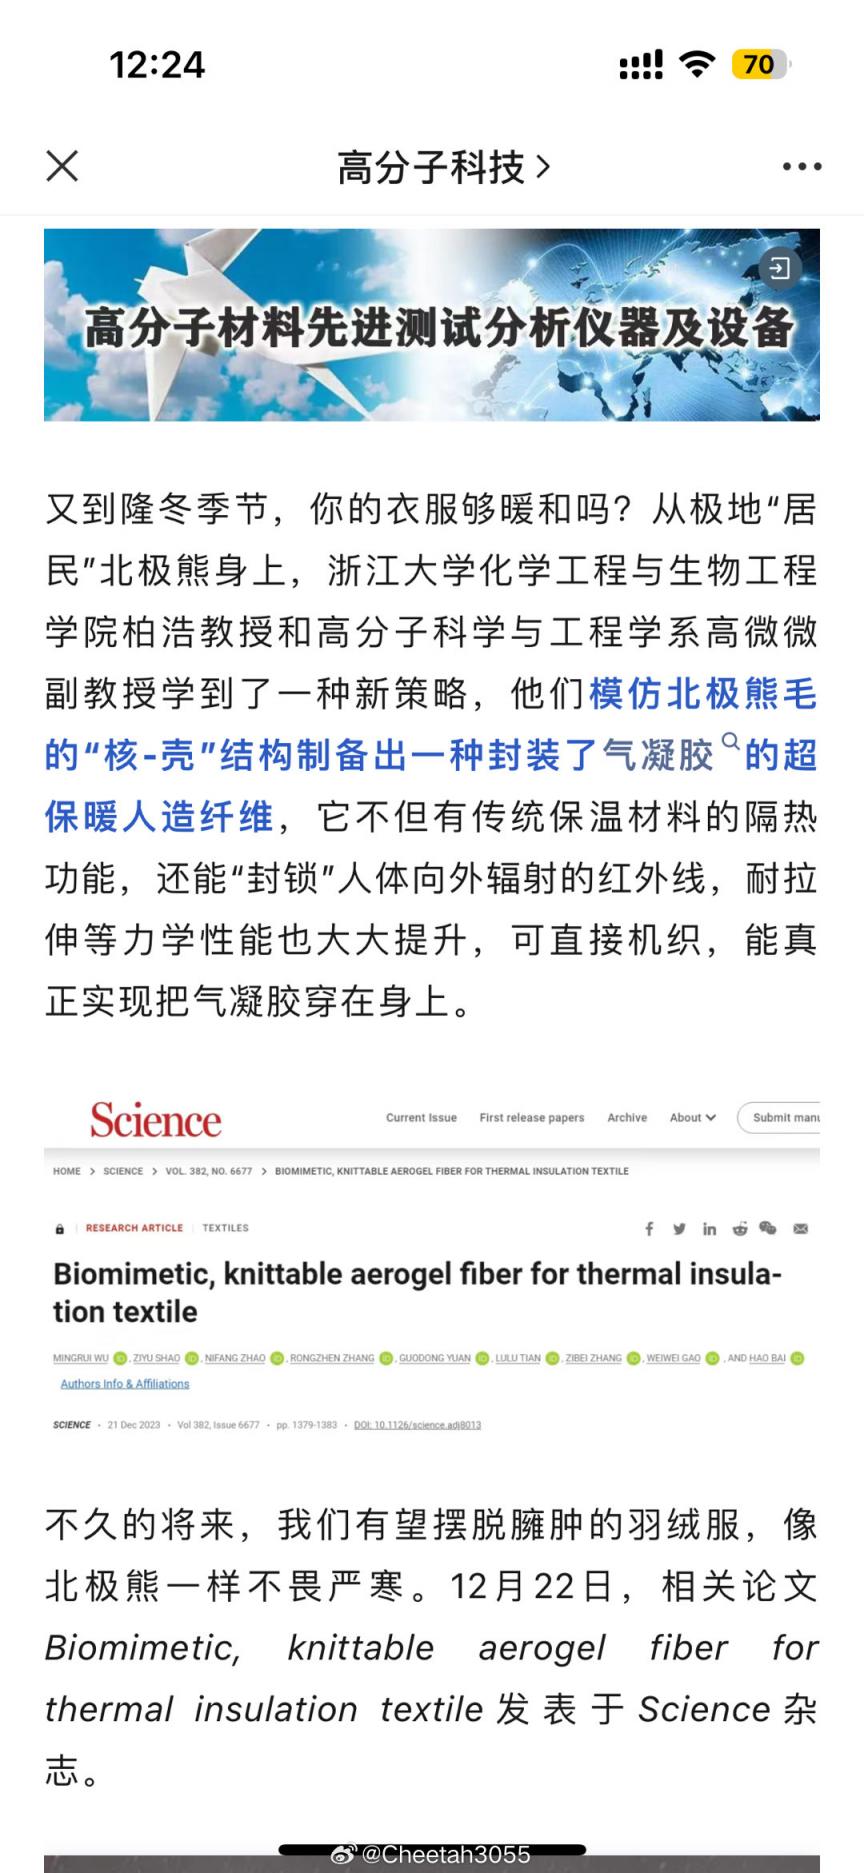 浙江大学的研究人员搞了个厉害的超保暖人造纤维 配图01